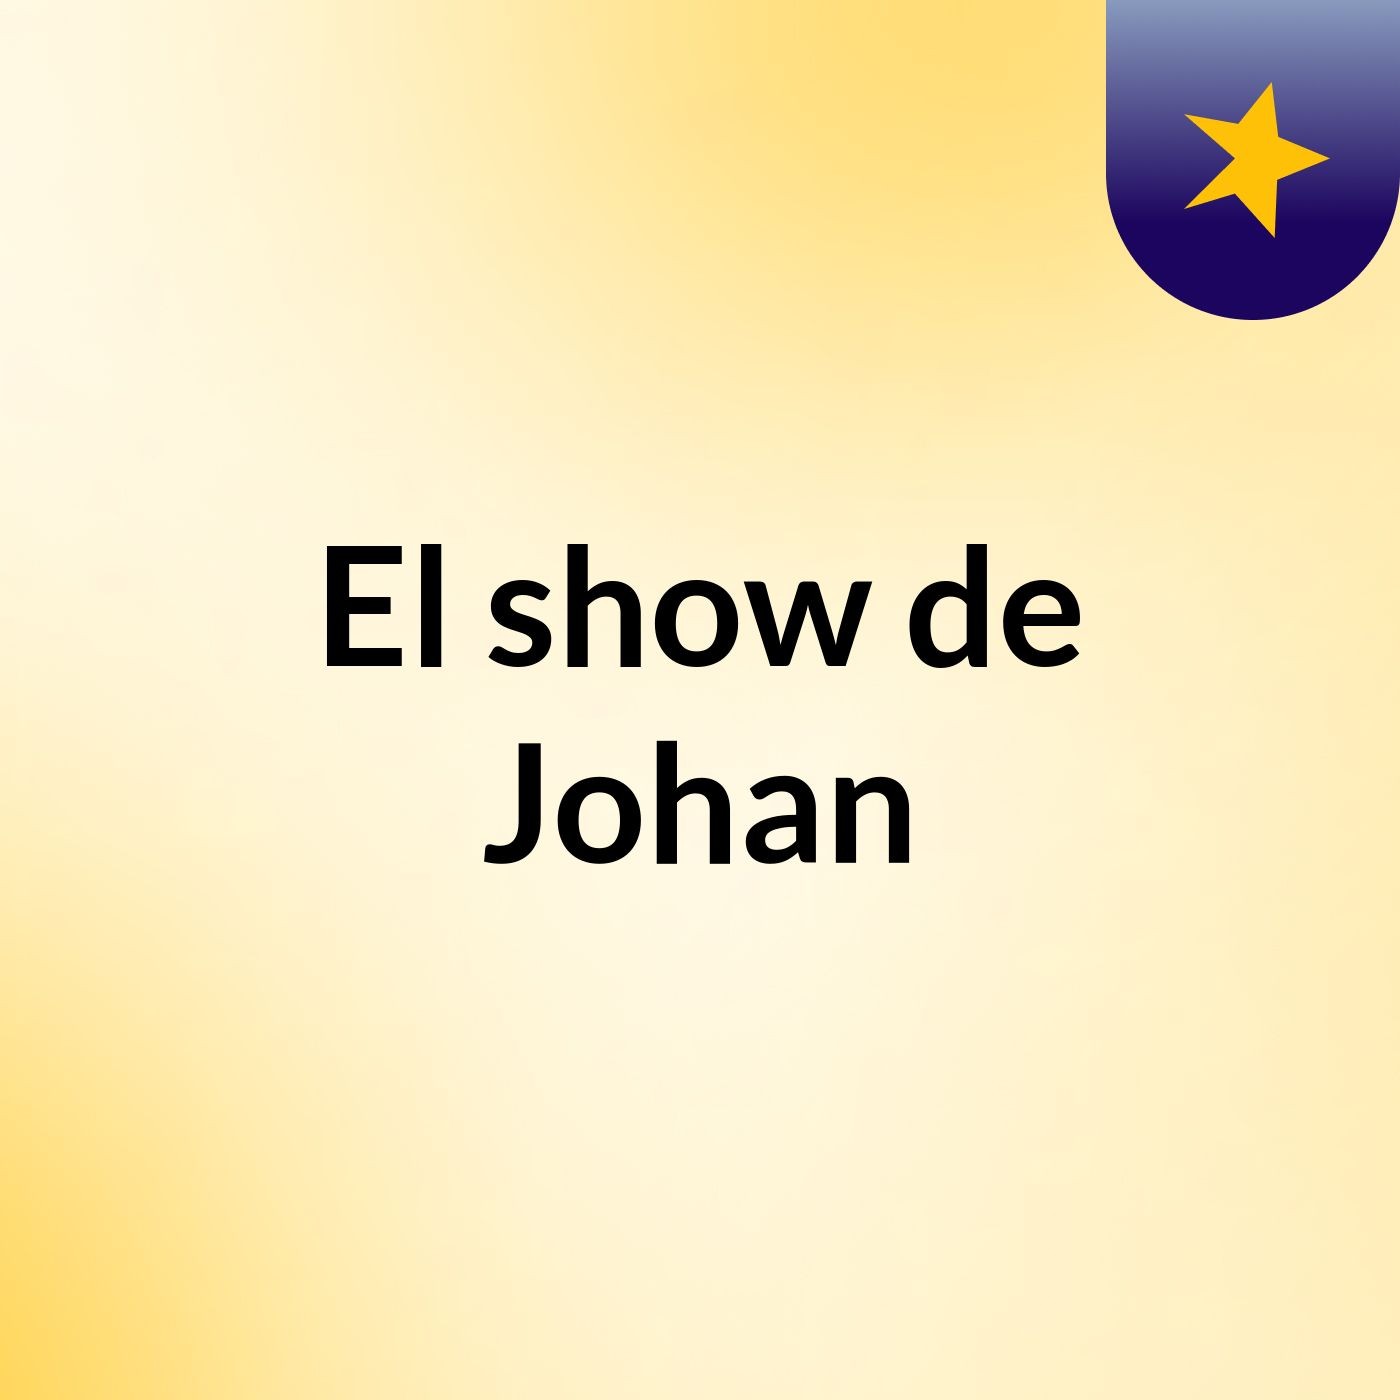 El show de Johan